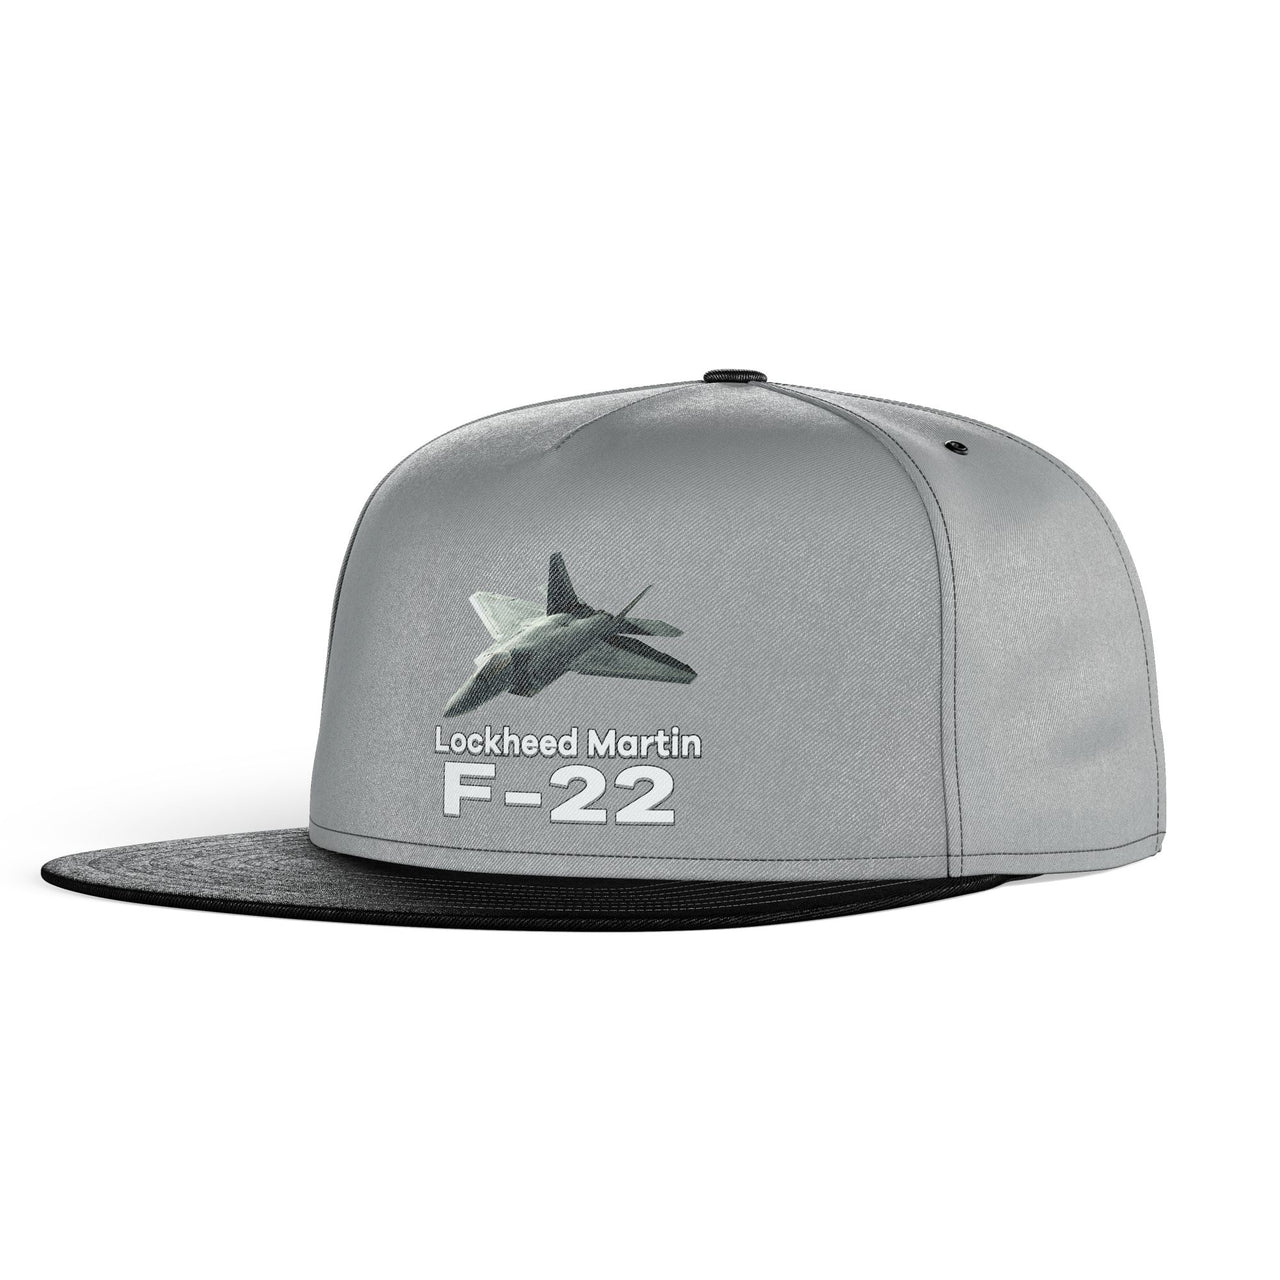 The Lockheed Martin F22 Designed Snapback Caps & Hats